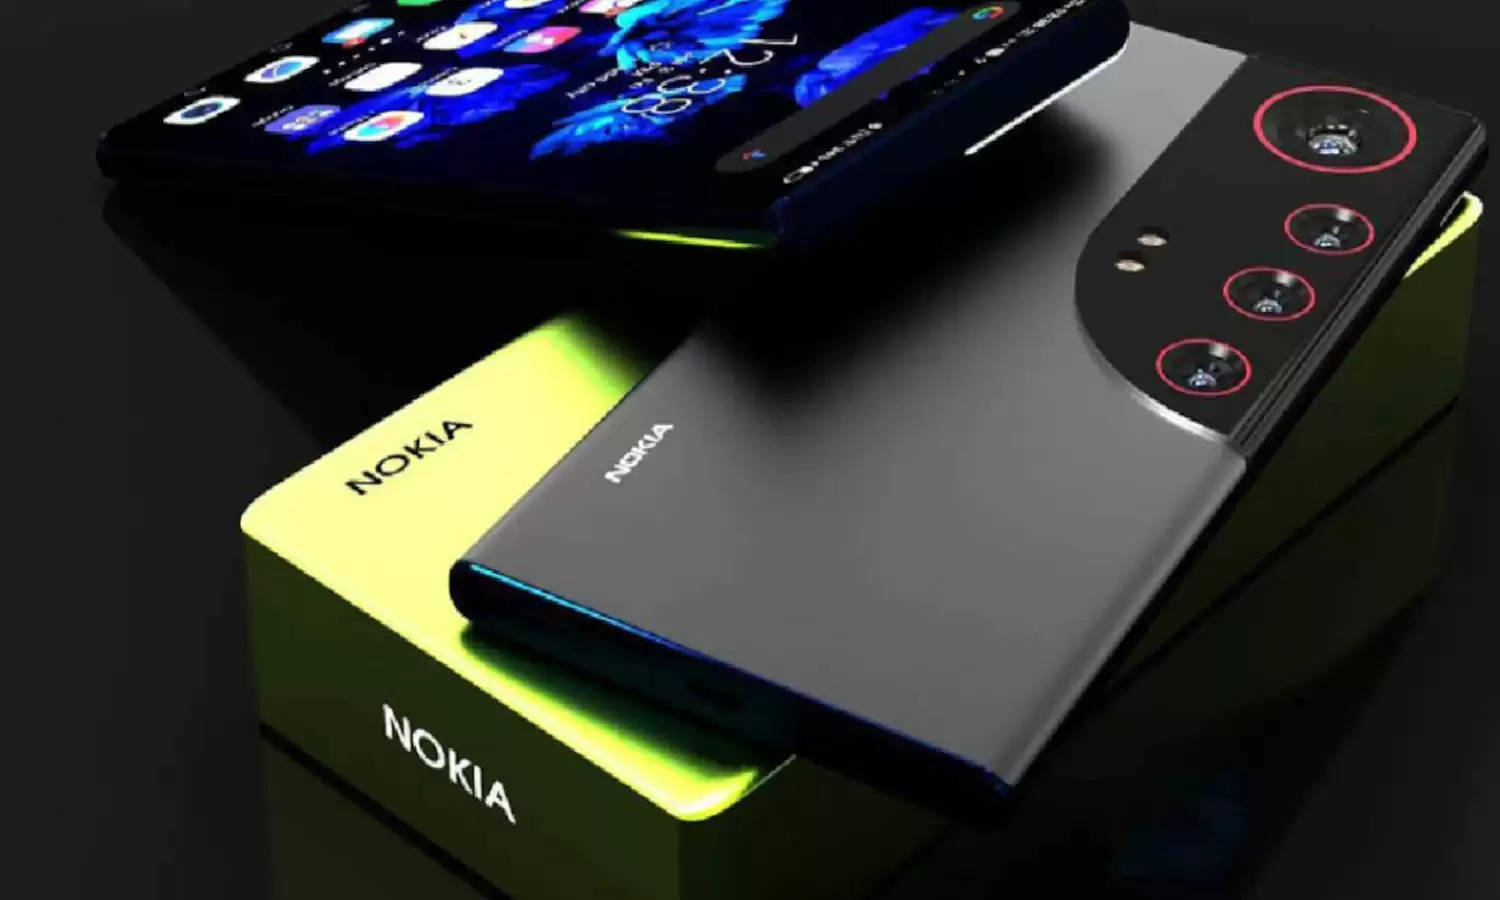 मार्केट में आ गया Nokia का धांसू 5g waterproof Smartphone, लुक और फीचर्स देख उछल पड़ेगें ग्राहक